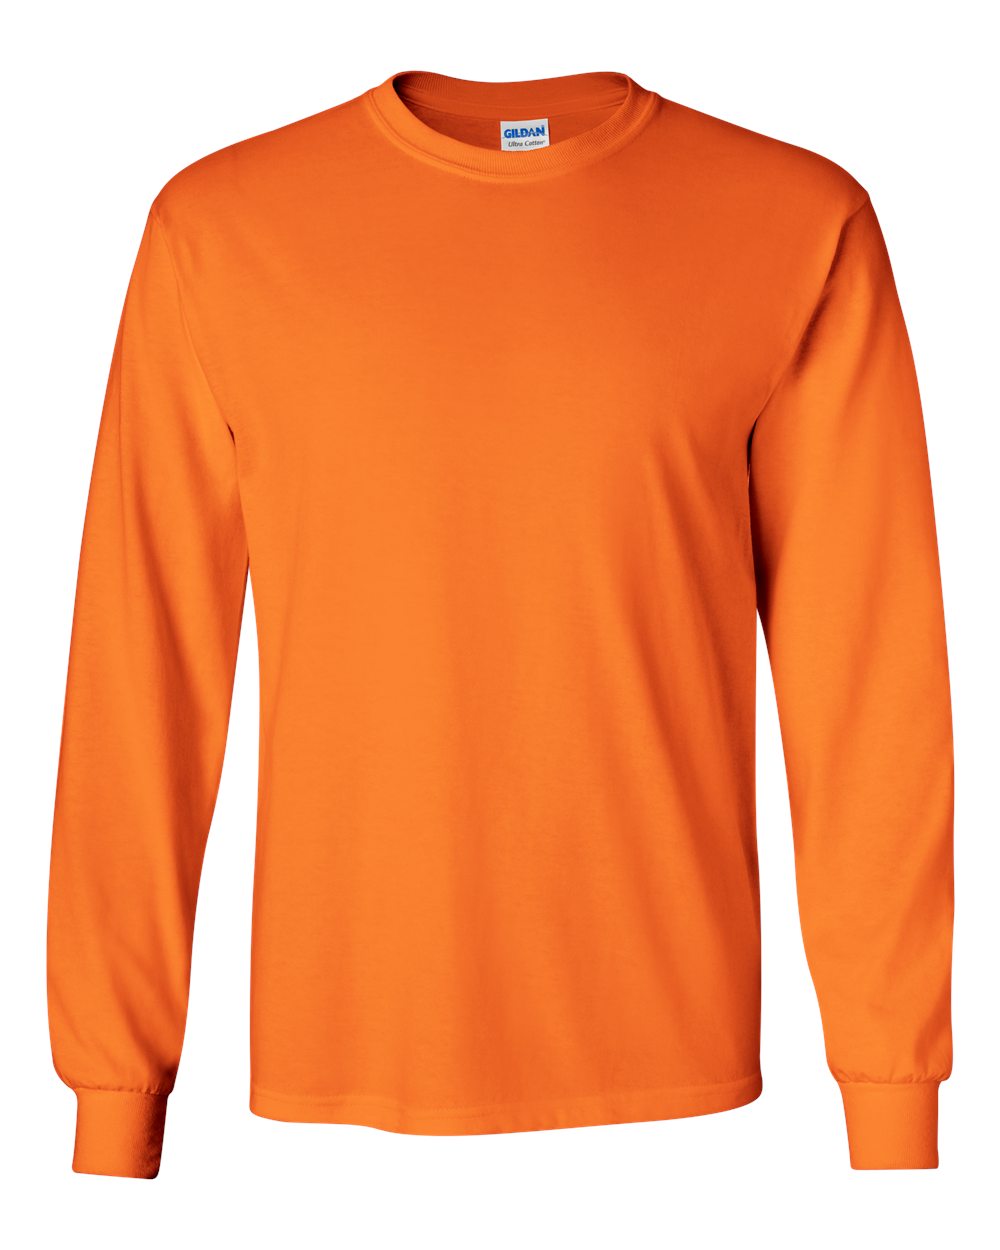 Gildan Long Sleeve (2400) in Safety Orange